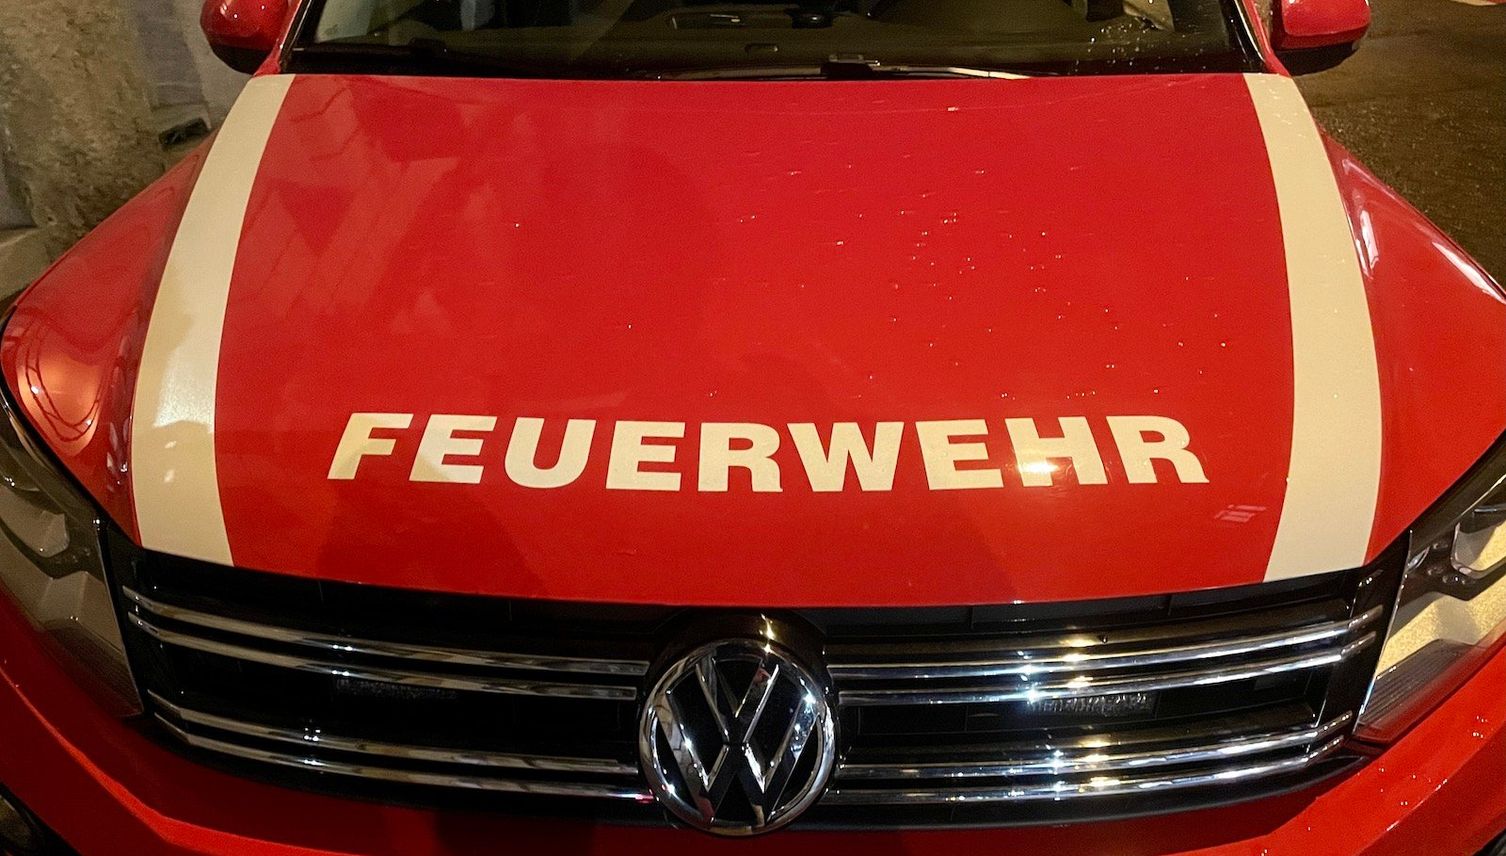 Adligenswil: Feuerwehrleute wehren sich gegen Fusion